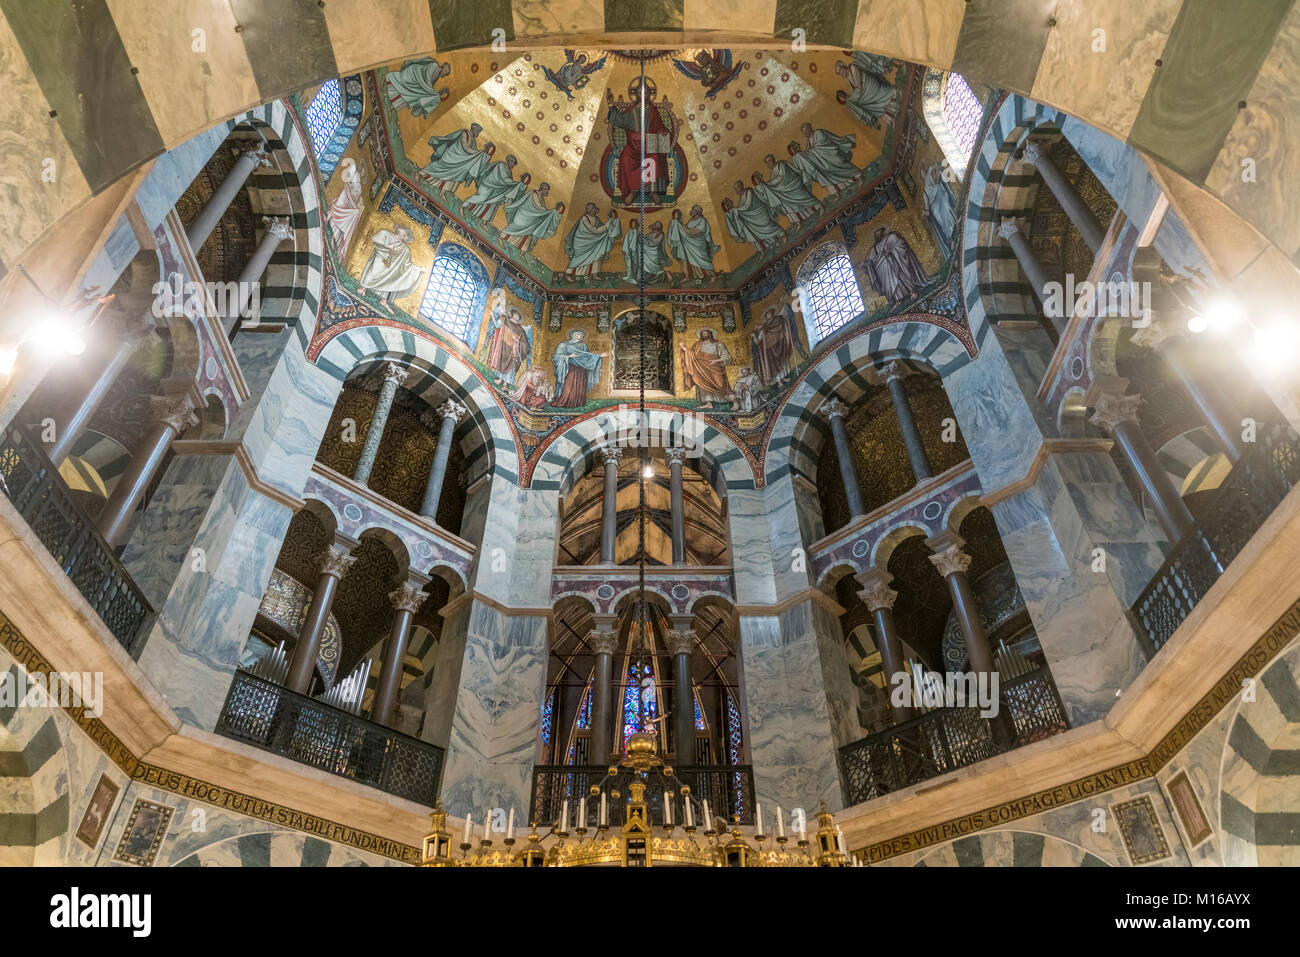 Cúpula octogonal de mosaicos en el techo de la catedral de Aachen, Aquisgrán, Renania del Norte-Westfalia, Alemania Foto de stock